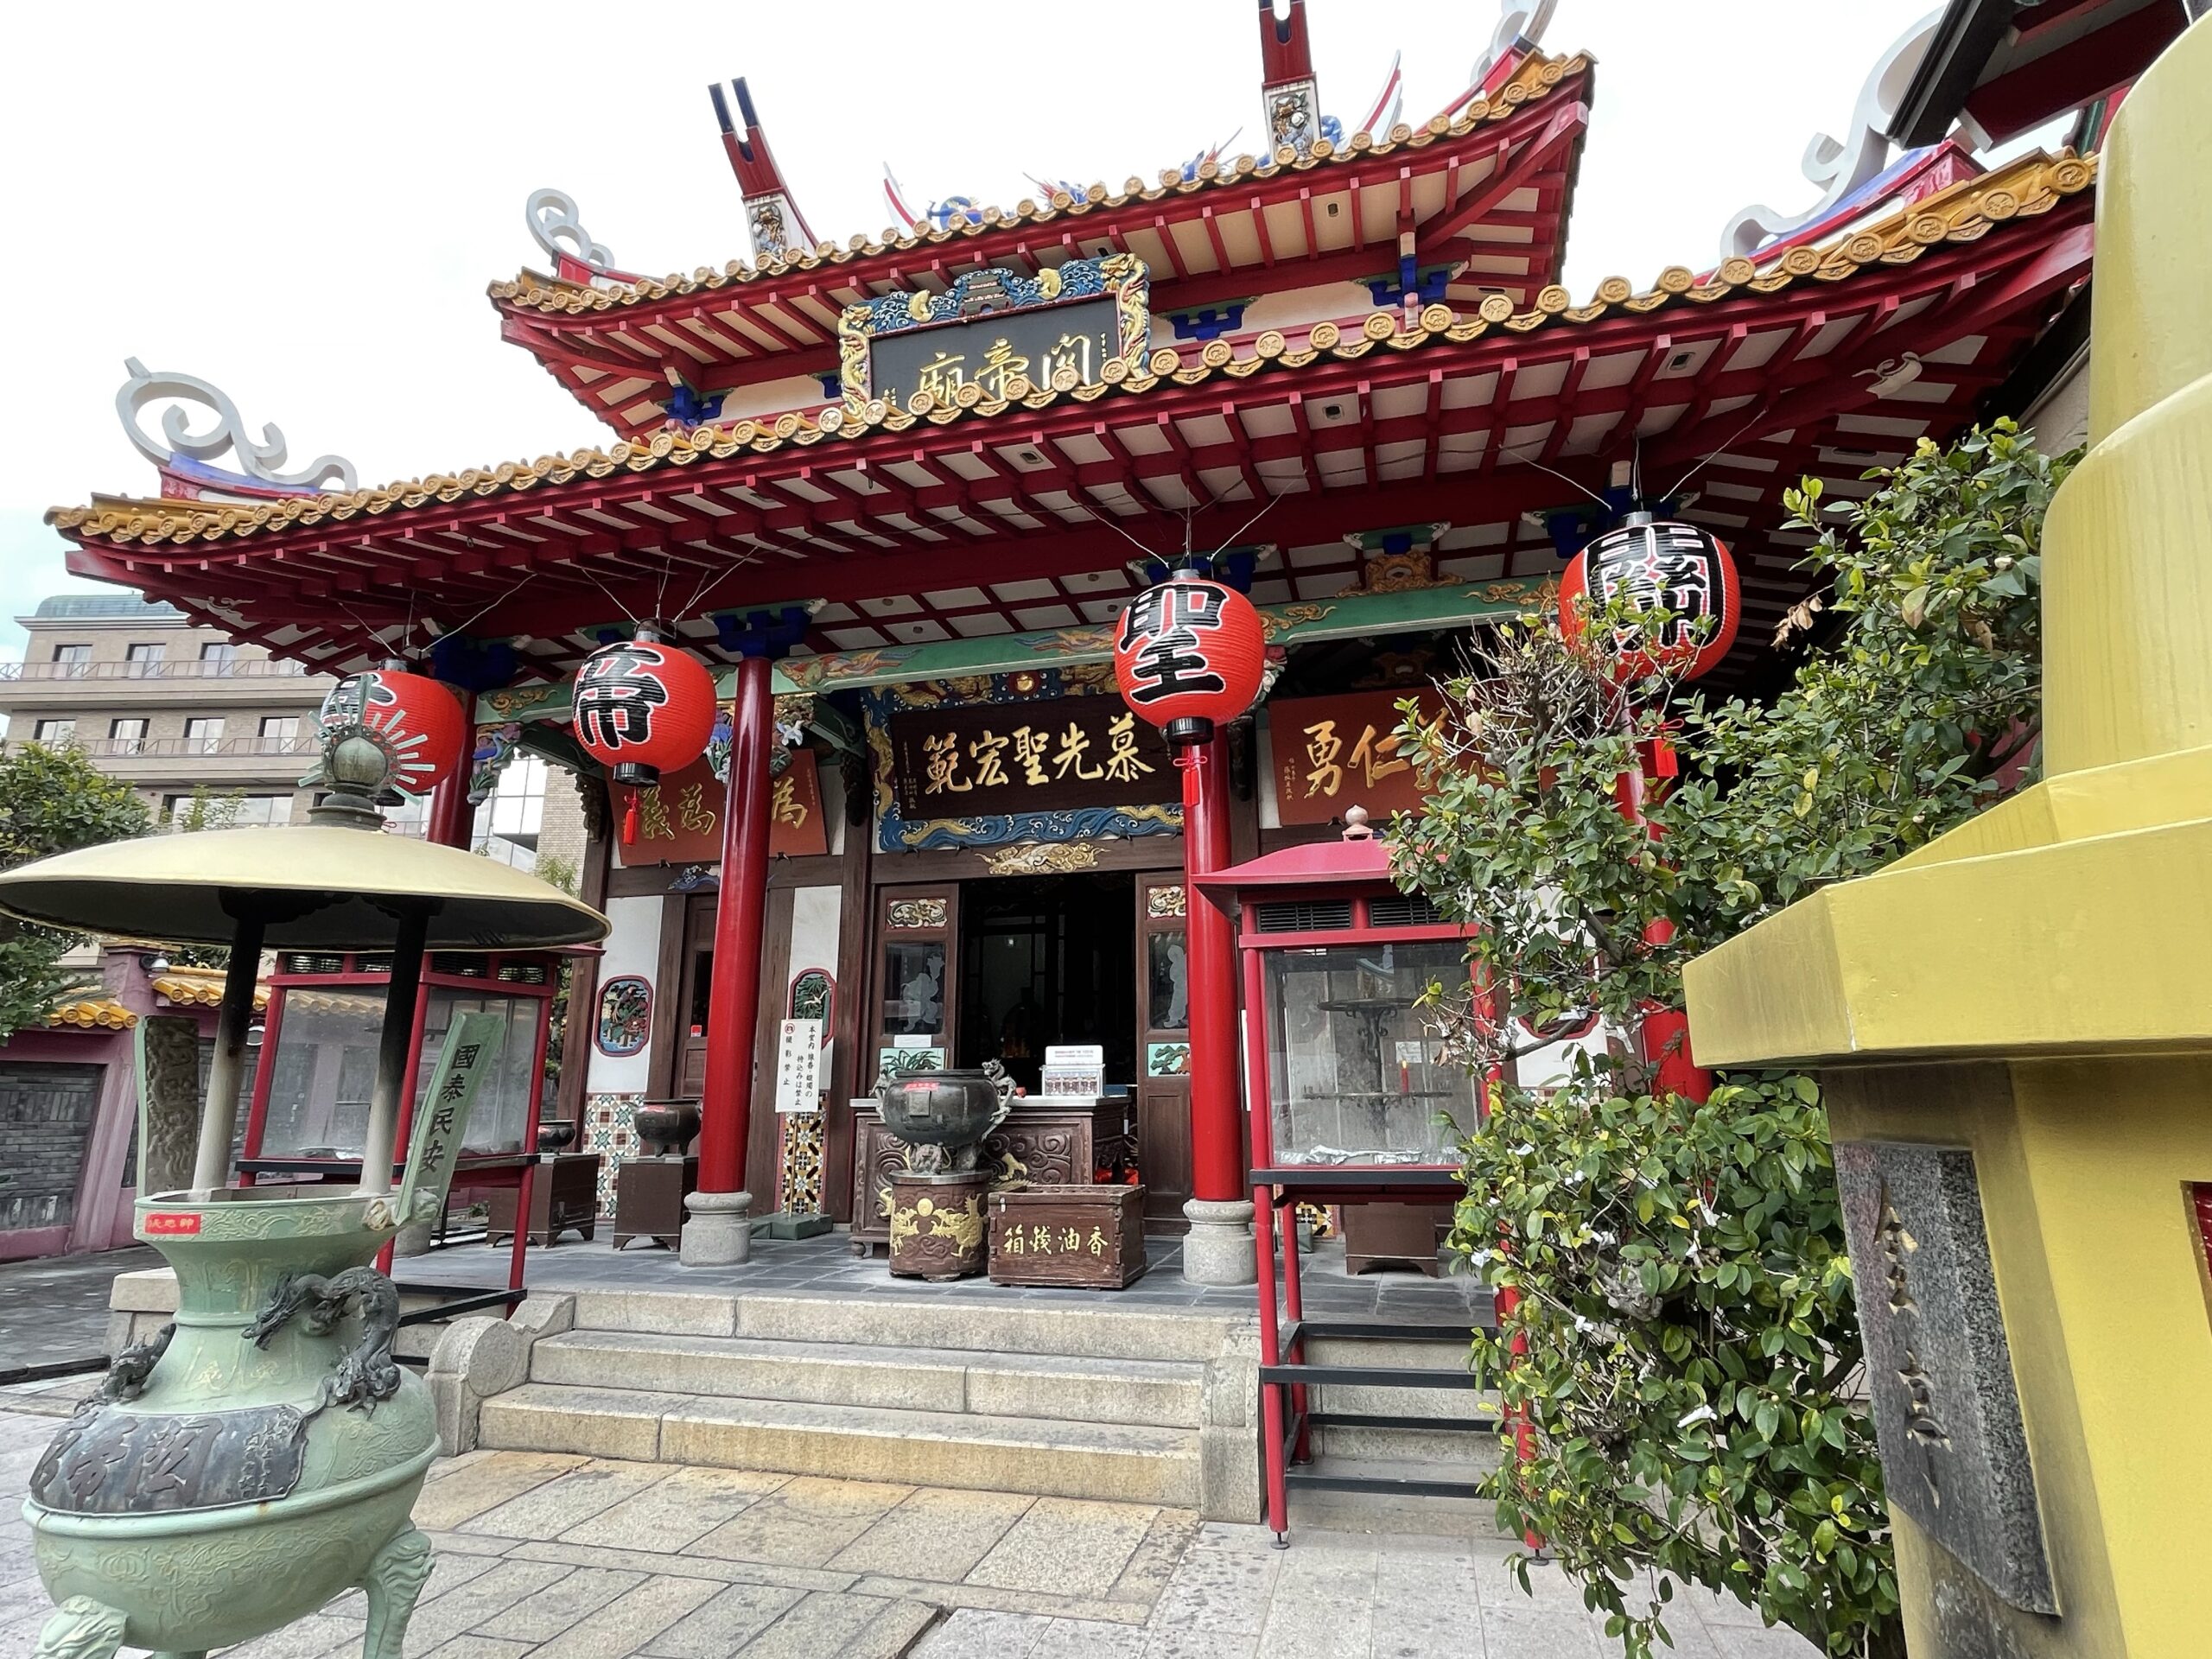 【三国志】神戸で発見、関羽雲長が祀られている『関帝廟』